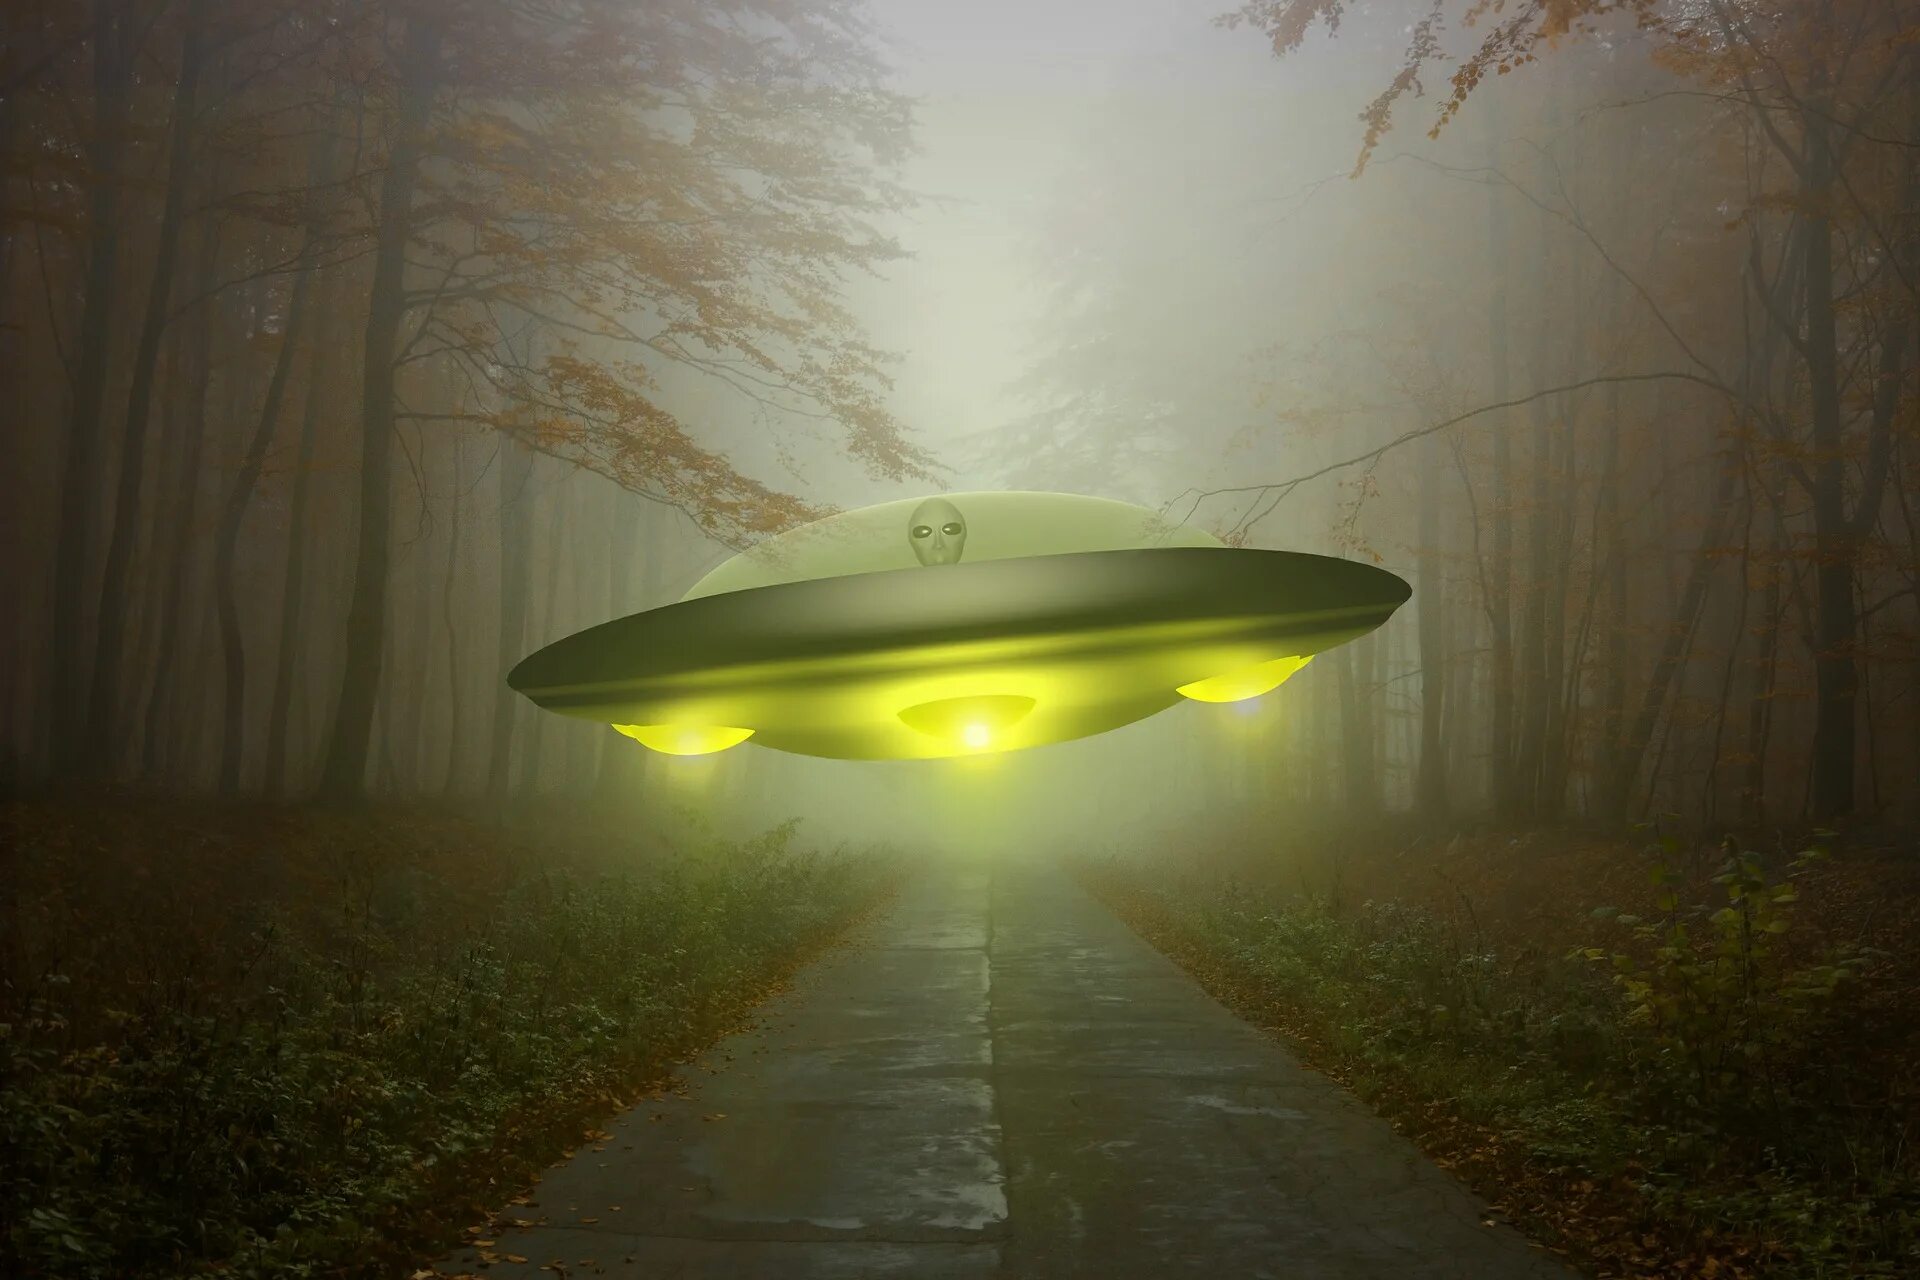 НЛО "летающая тарелка" Губенко. НЛО UFO неопознанные летающие объекты. Инопланетная тарелка. Космическая тарелка. Человекоподобный пилот летающей тарелки